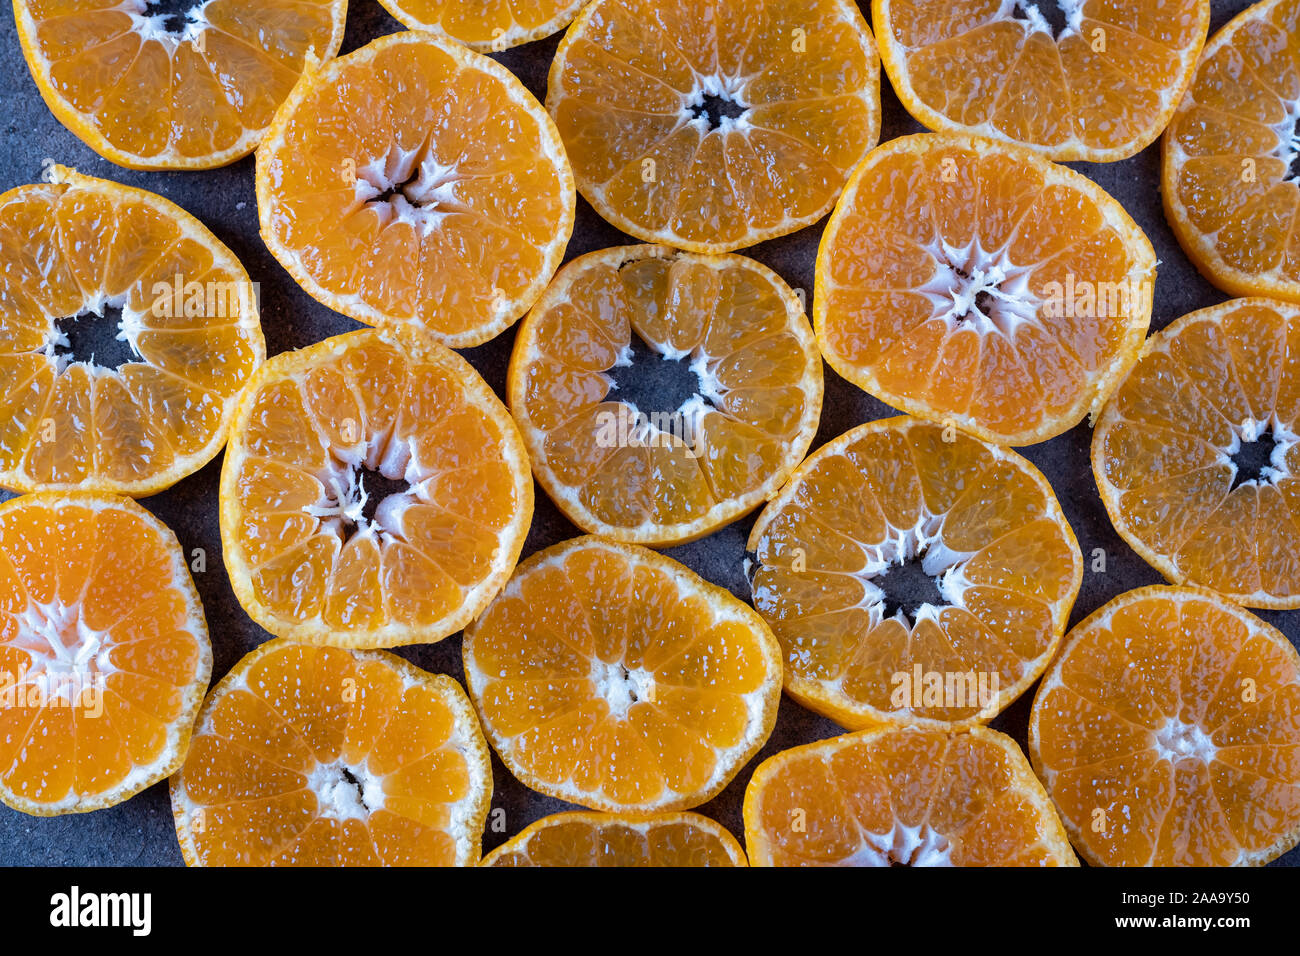 Morceaux ronds de la mandarine sur fond sombre. la texture de mandarine Banque D'Images